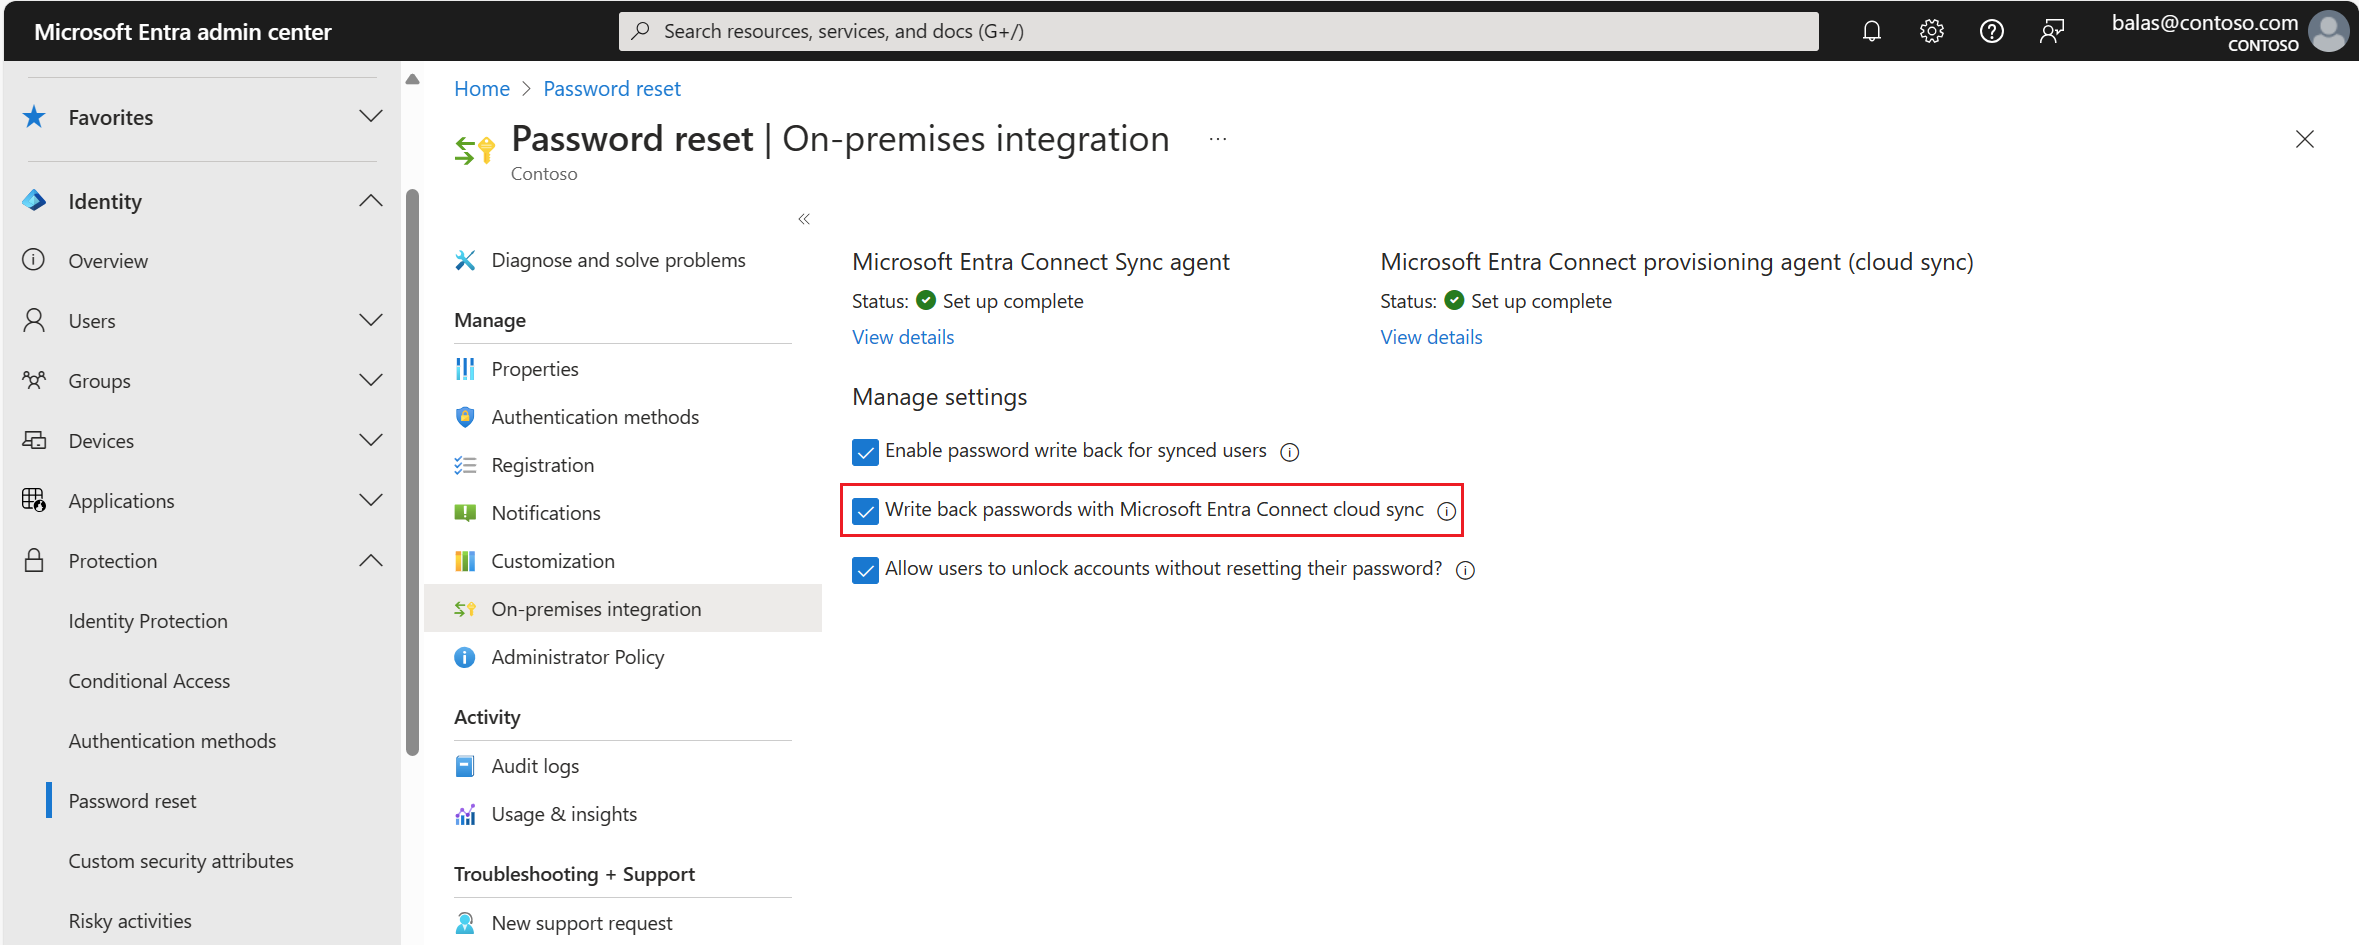 Microsoft Entra ID からオンプレミス統合へのパスワード ライトバックが有効になっているスクリーンショット。